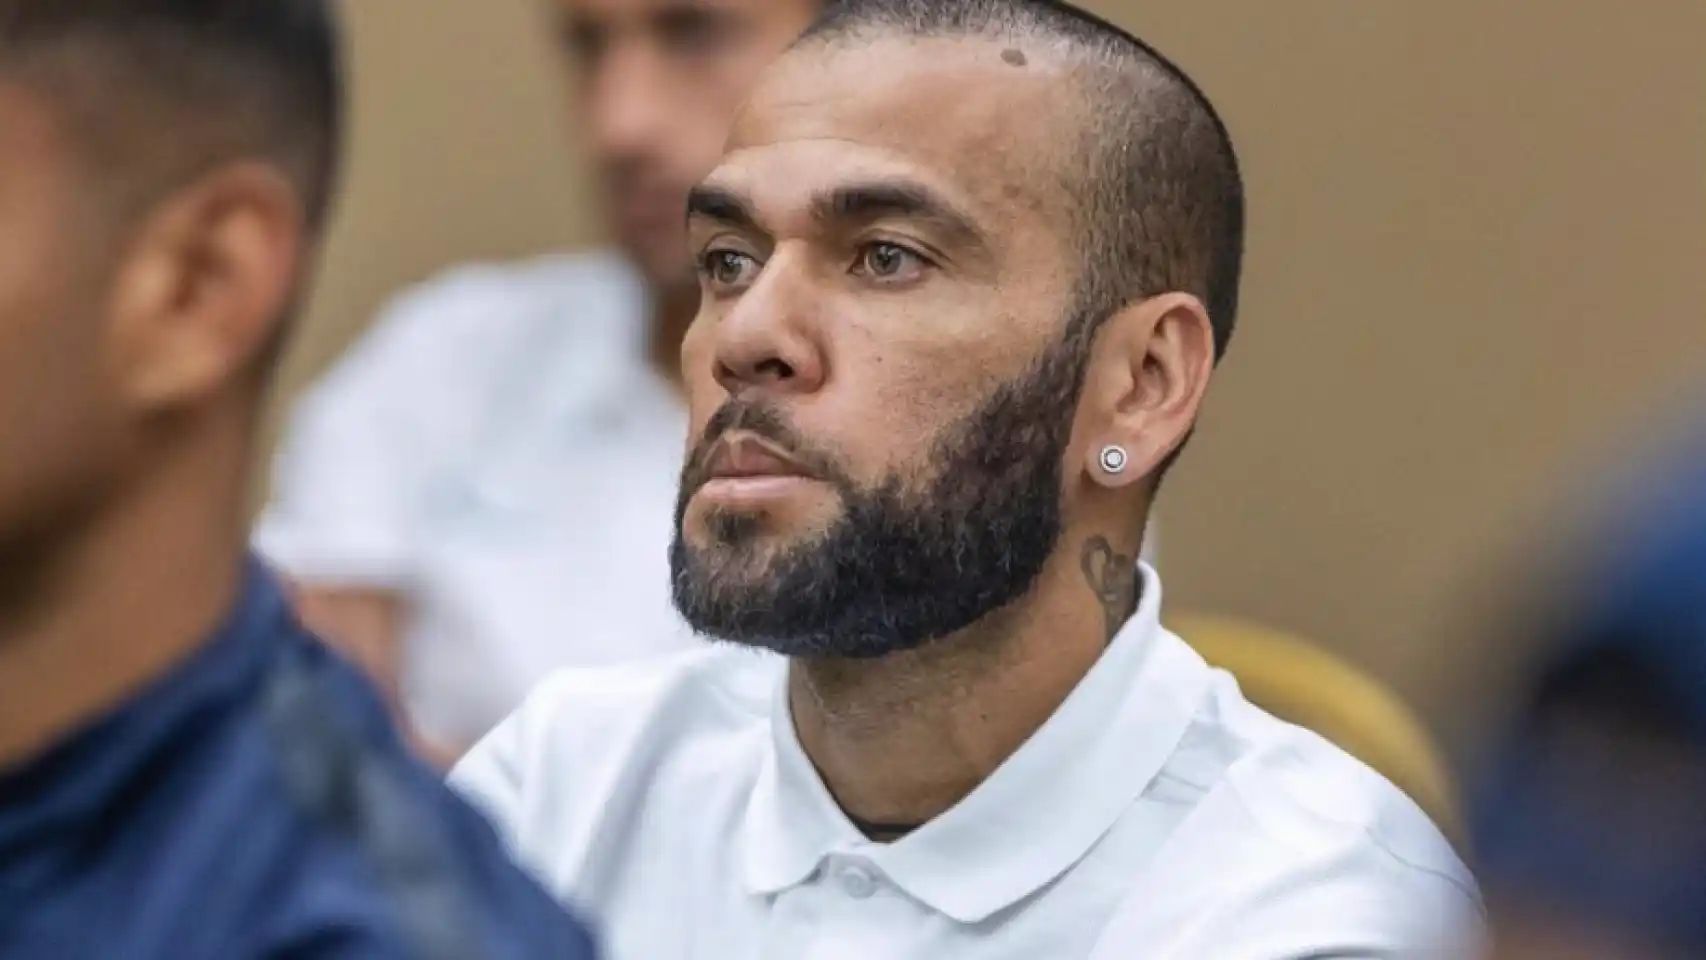 Dani Alves parties until 5am after prison release amid pending rape conviction appeal